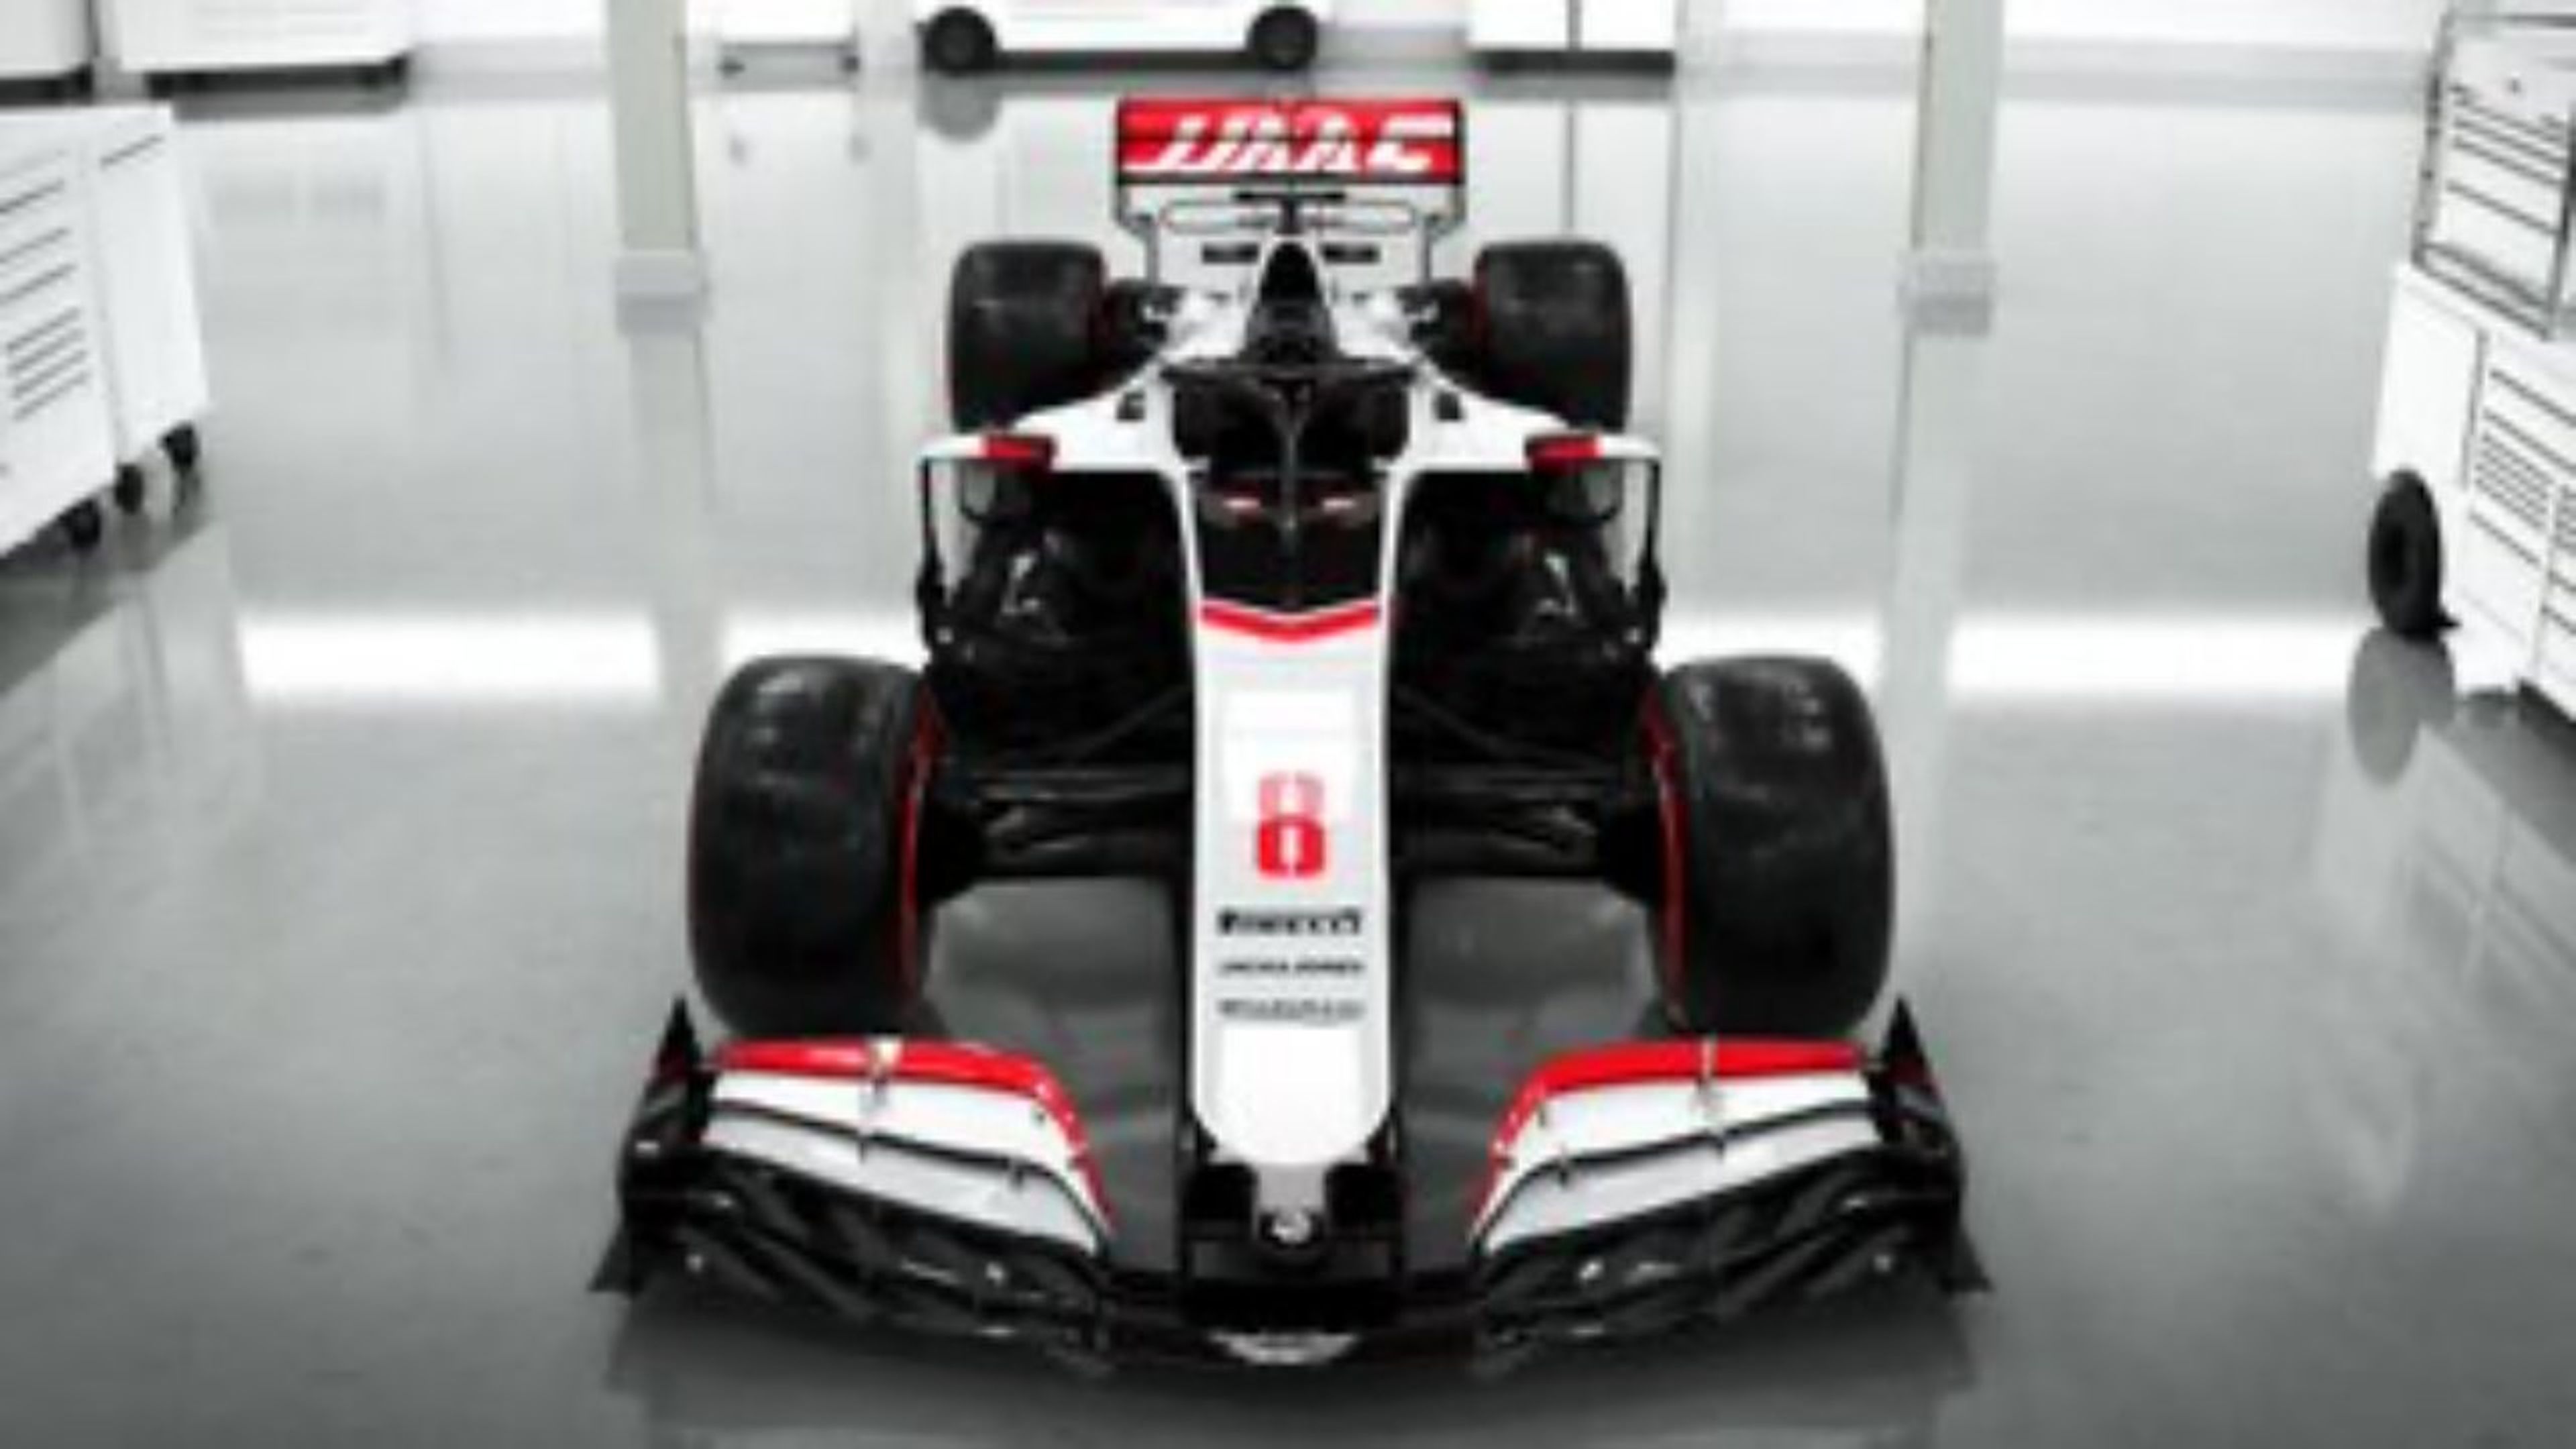 Haas F1 2020